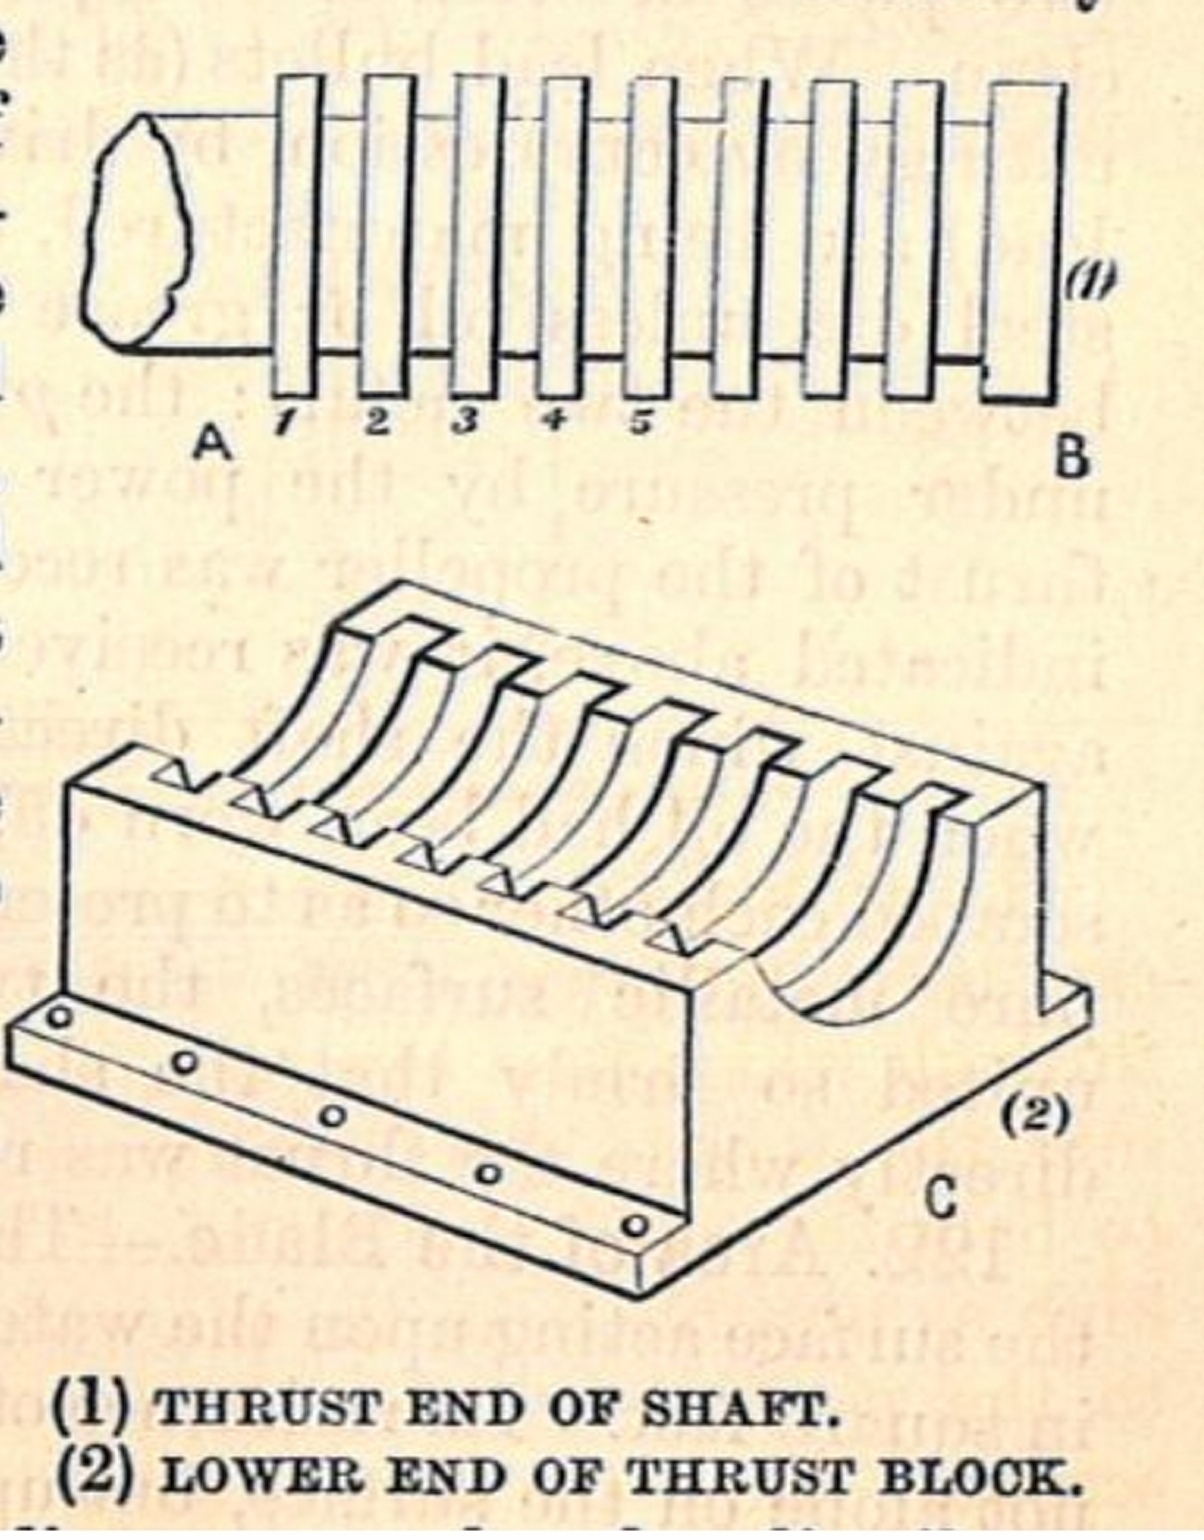 De vroegste vorm van een druklager voor de schroefas met bovenaan de flenzen op de schroefas en onderaan het blok dat aan de romp wordt bevestigd. Een oplossing met veel wrijving.